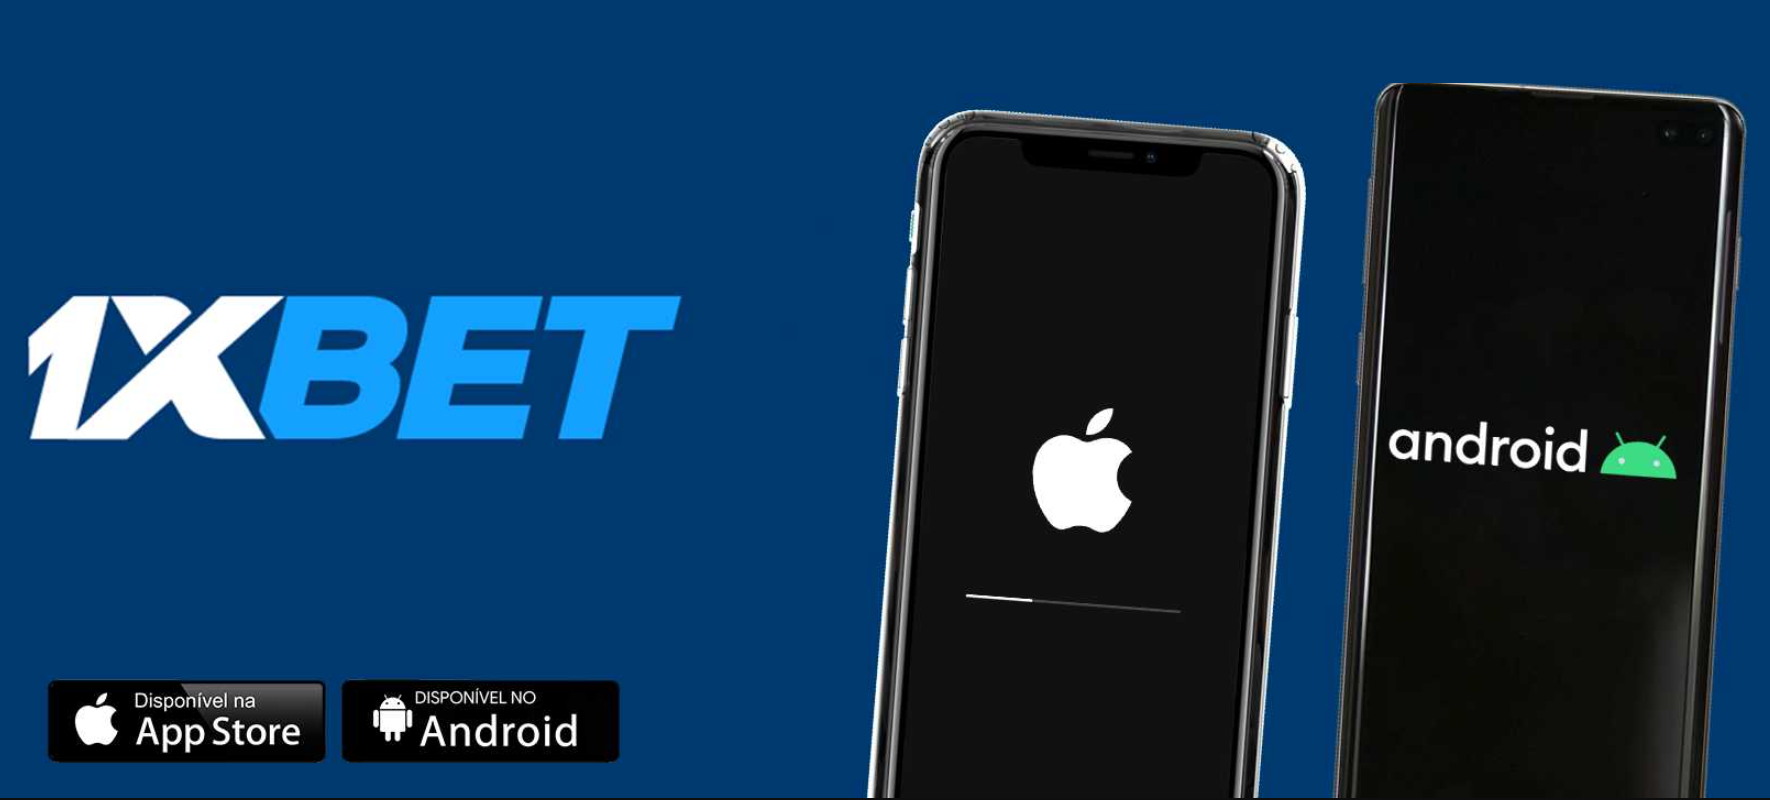 Mobile 1xBet app iOS